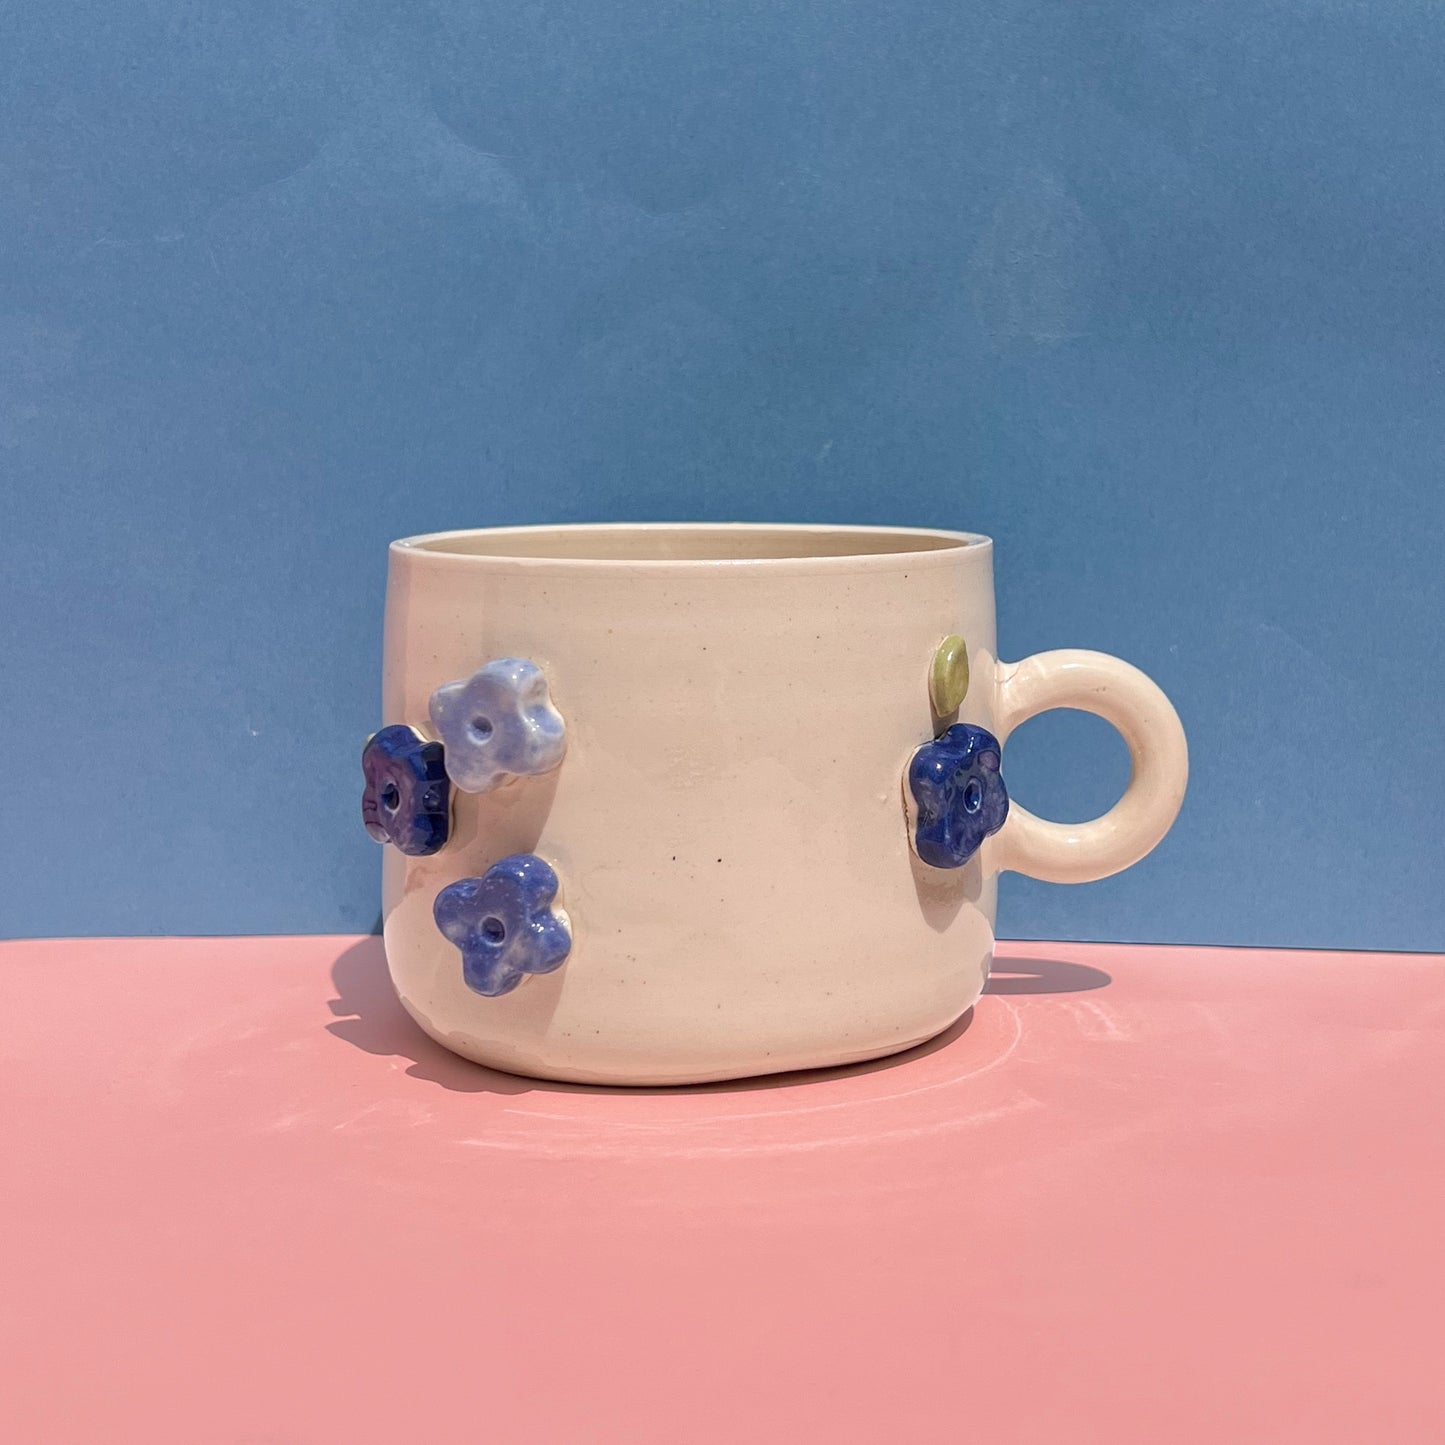 Flower mug :)